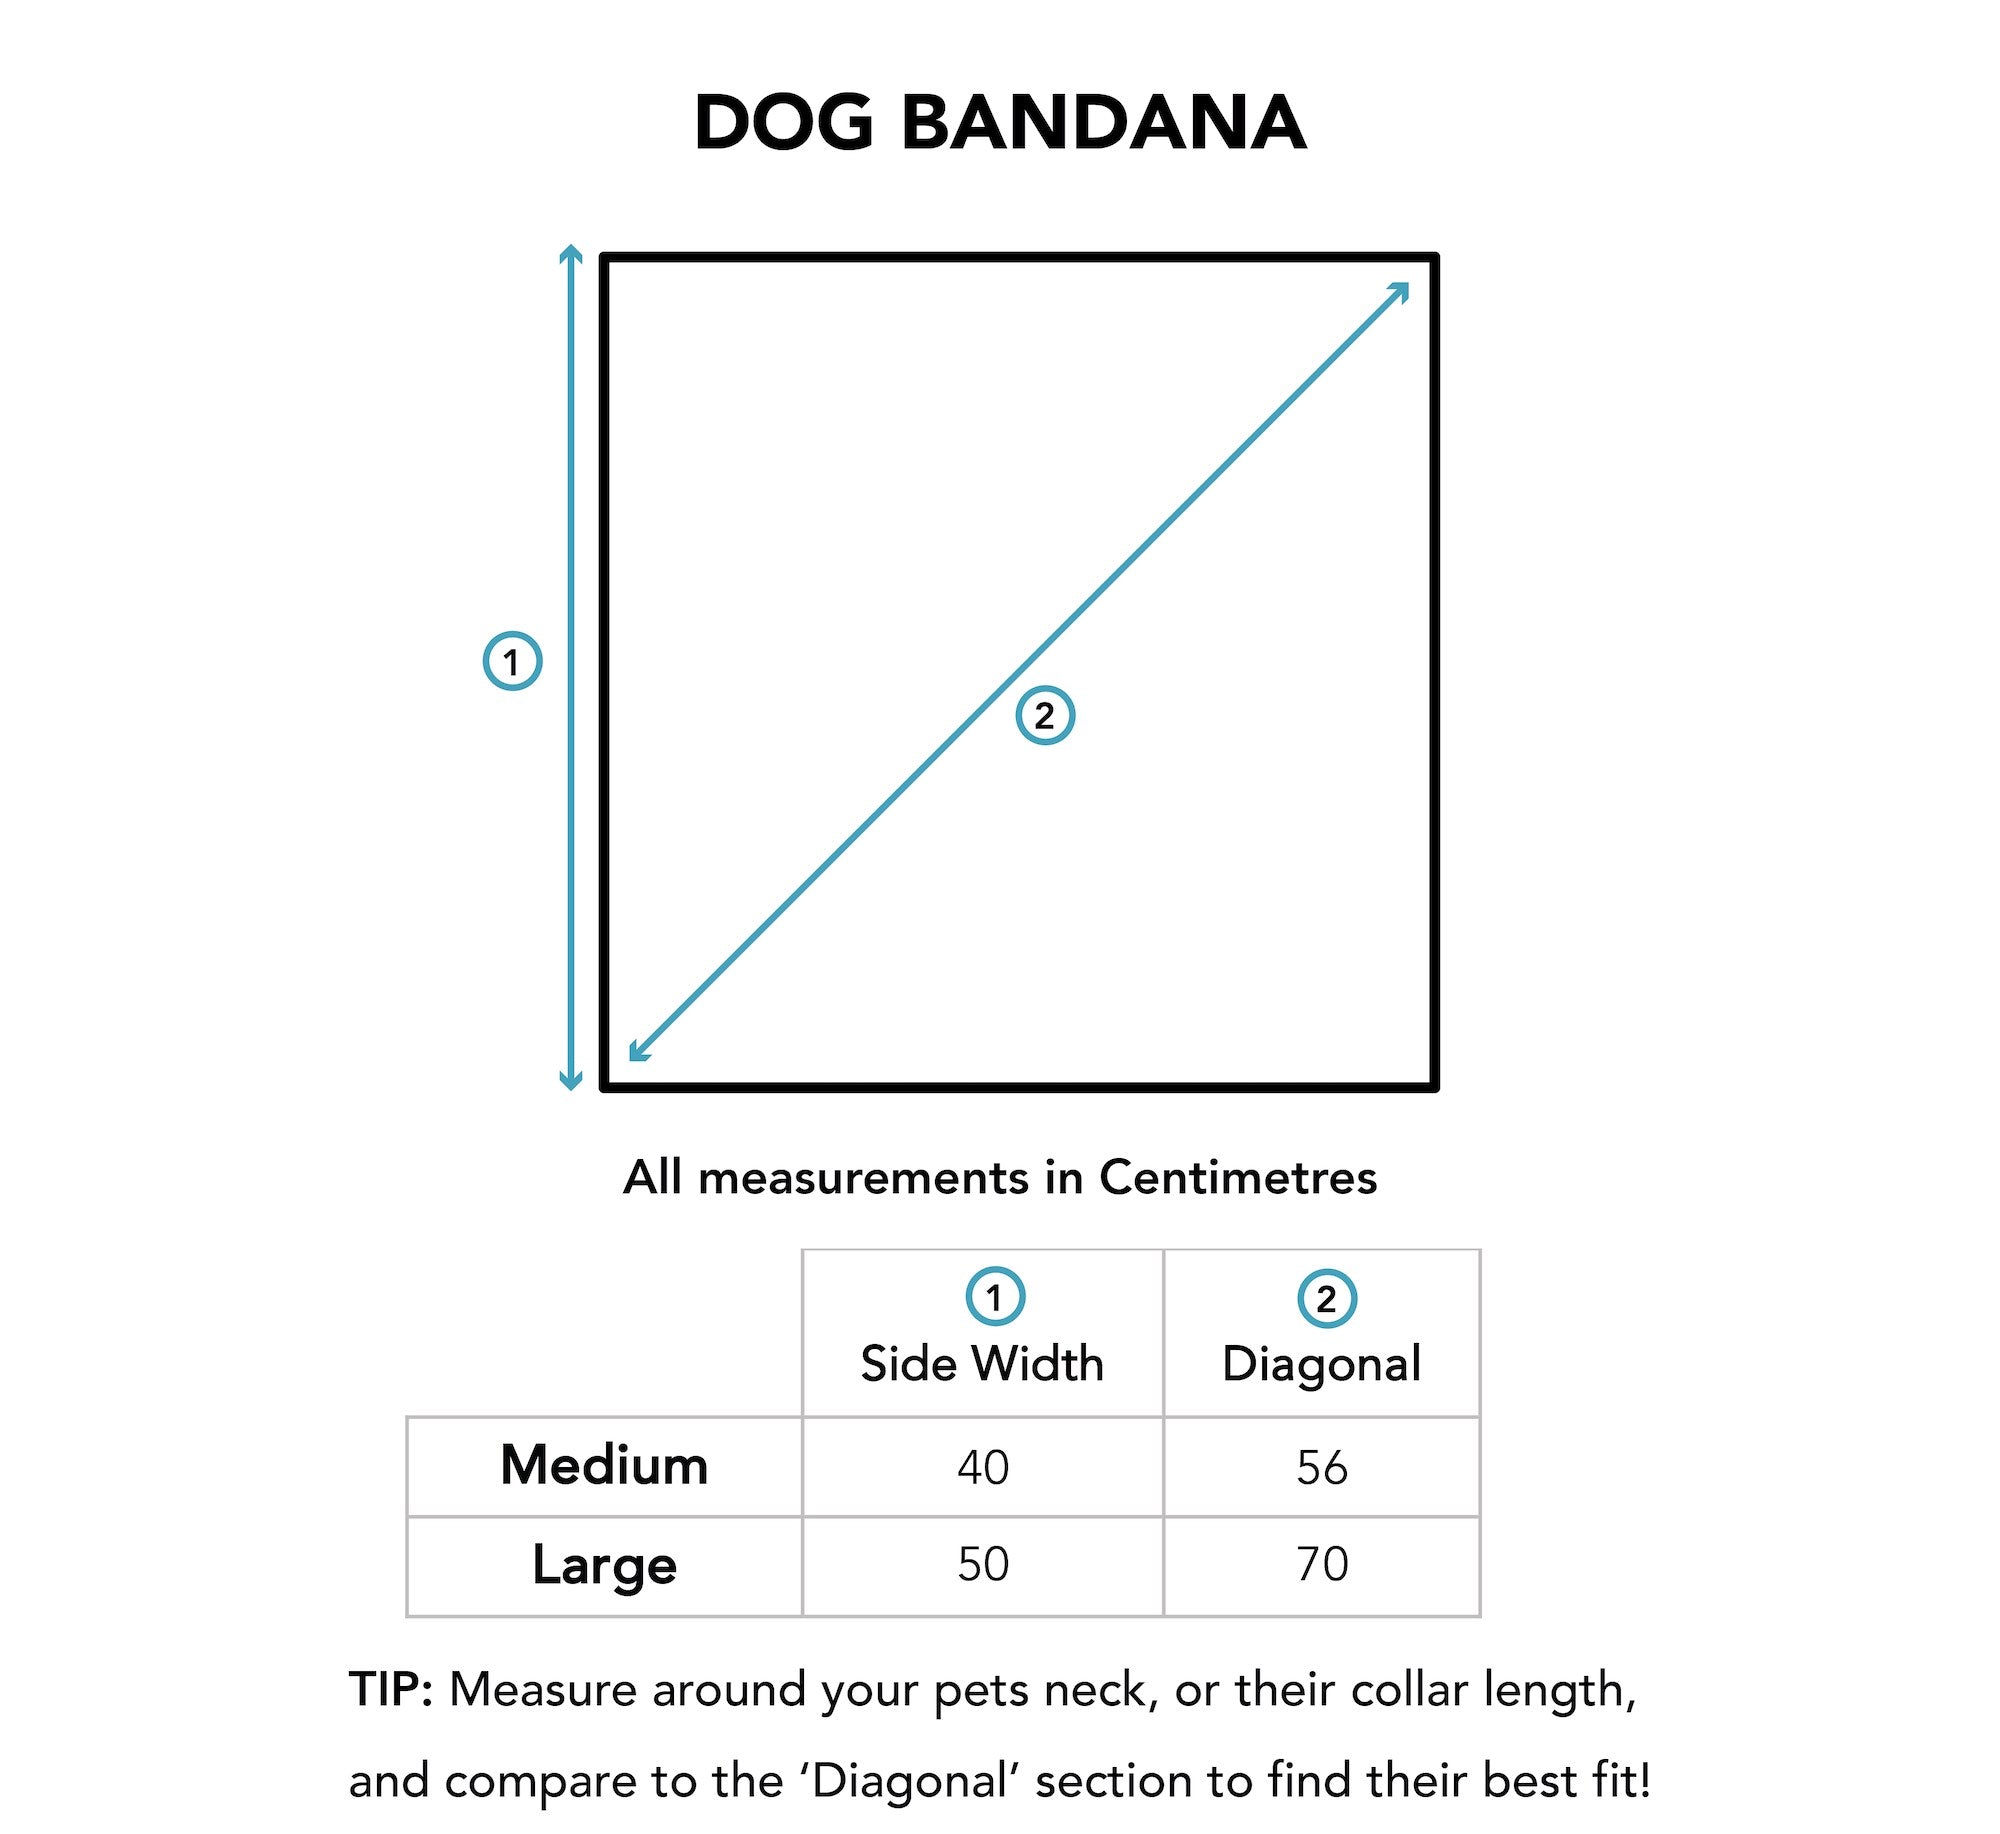 Dog Bandana Size Chart